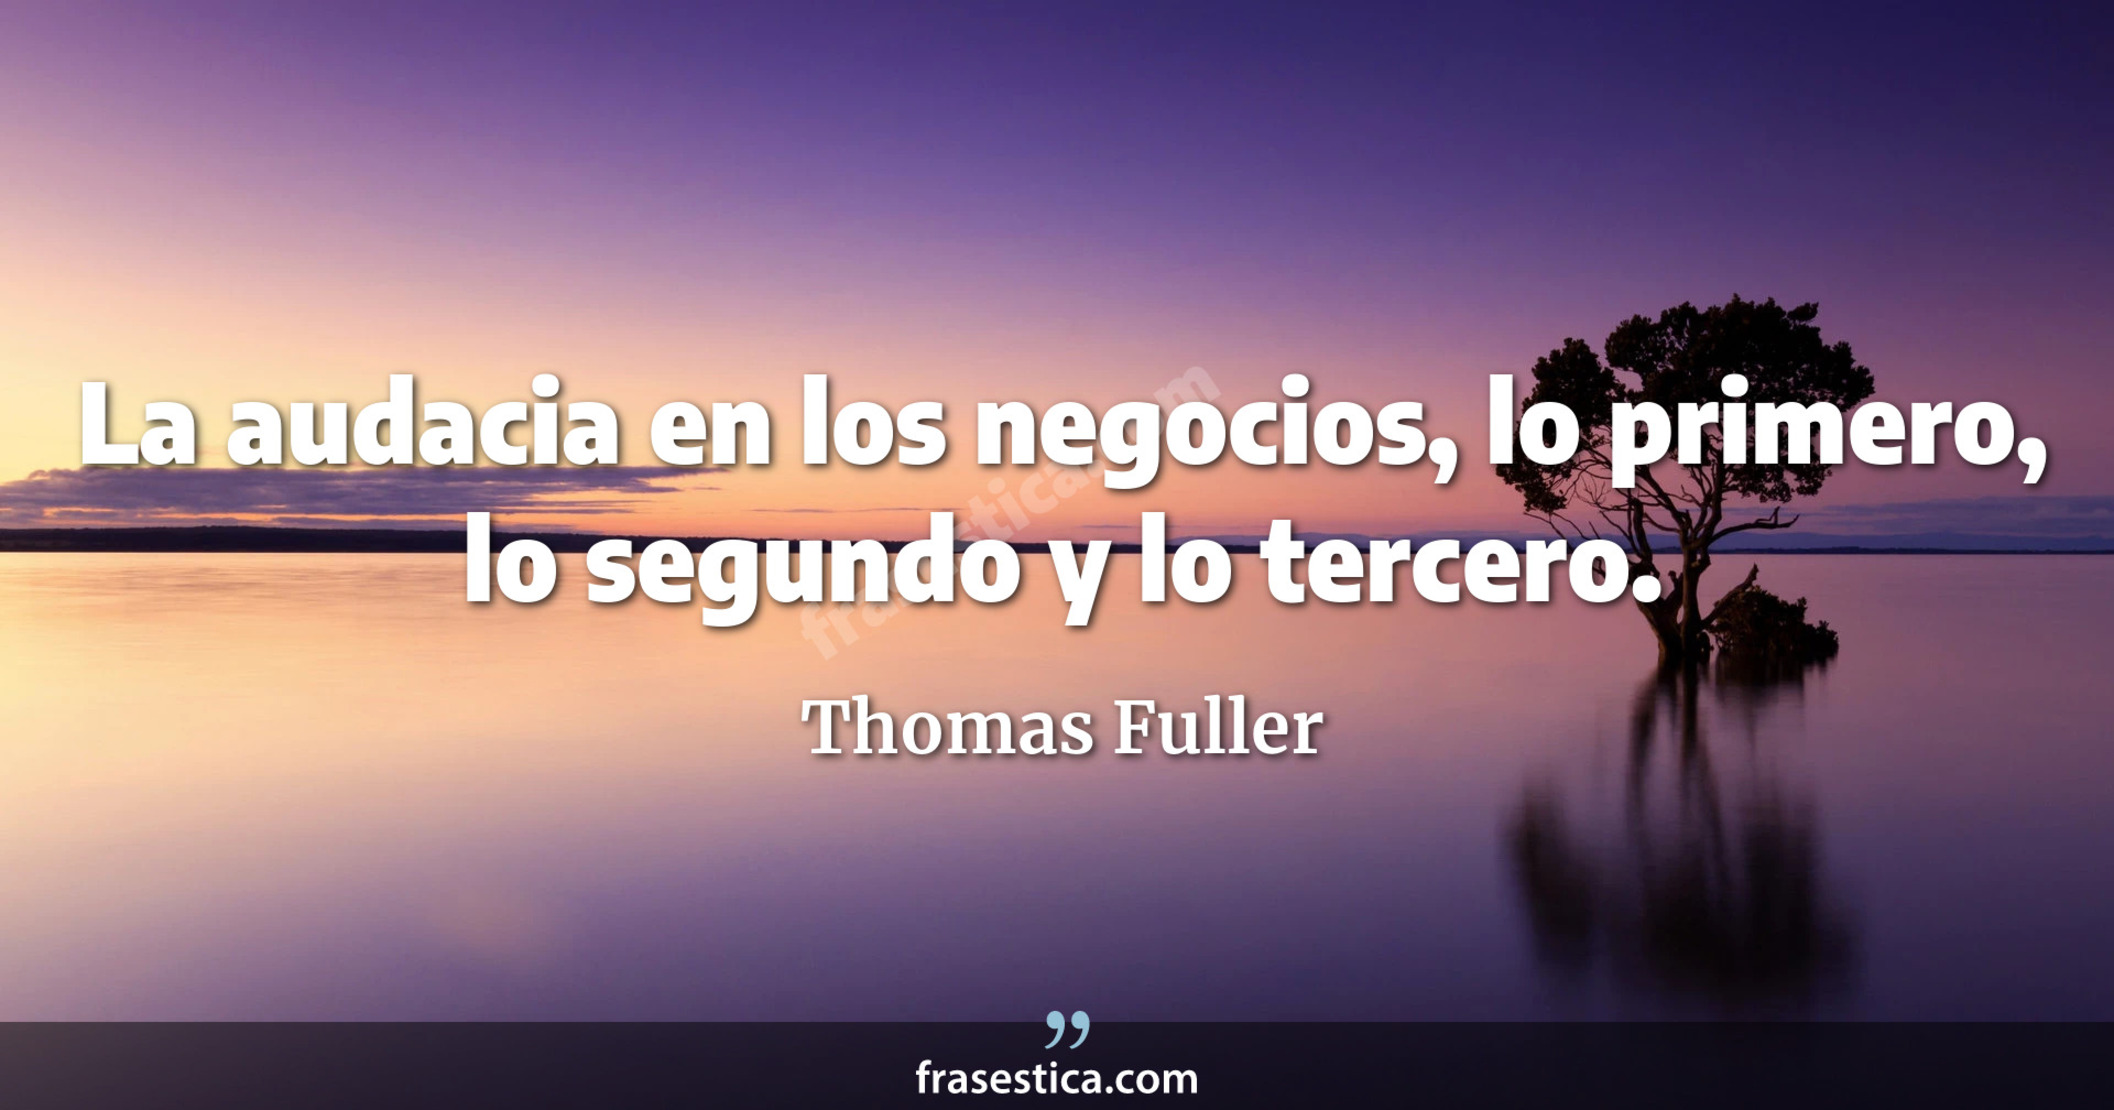 La audacia en los negocios, lo primero, lo segundo y lo tercero. - Thomas Fuller